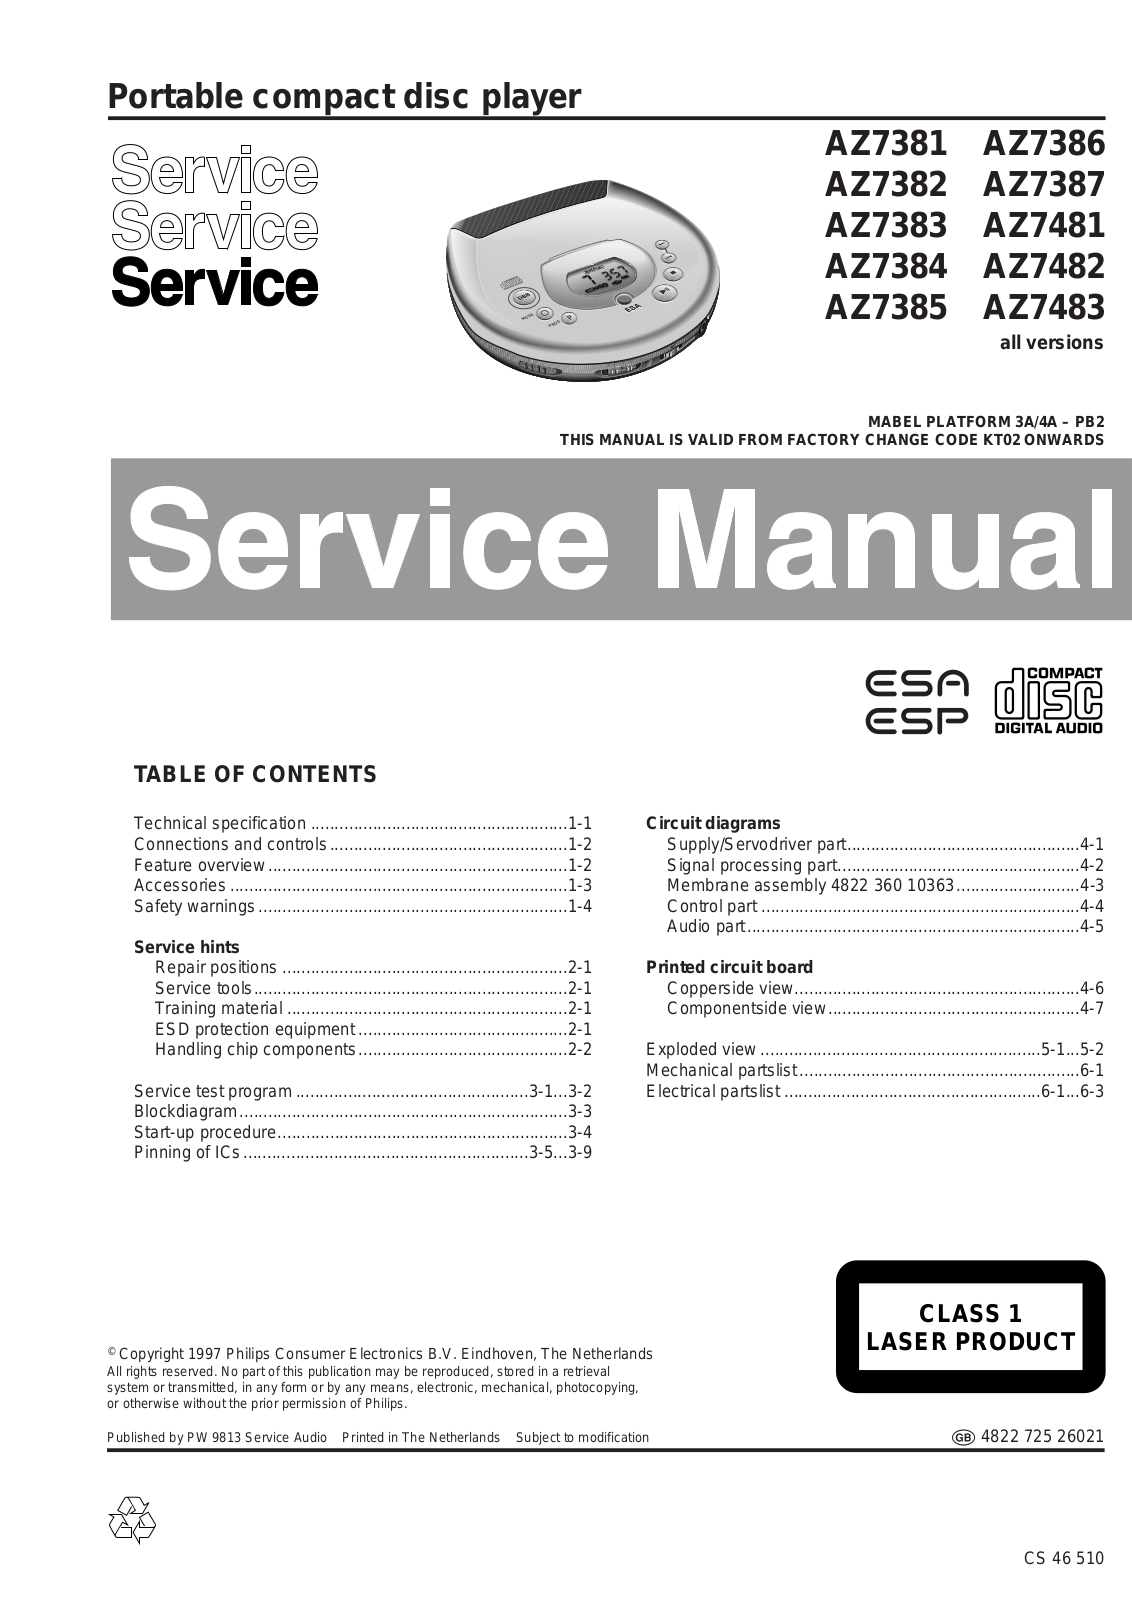 Philips AZ7381, AZ87, AZ7481-83 Service Manual